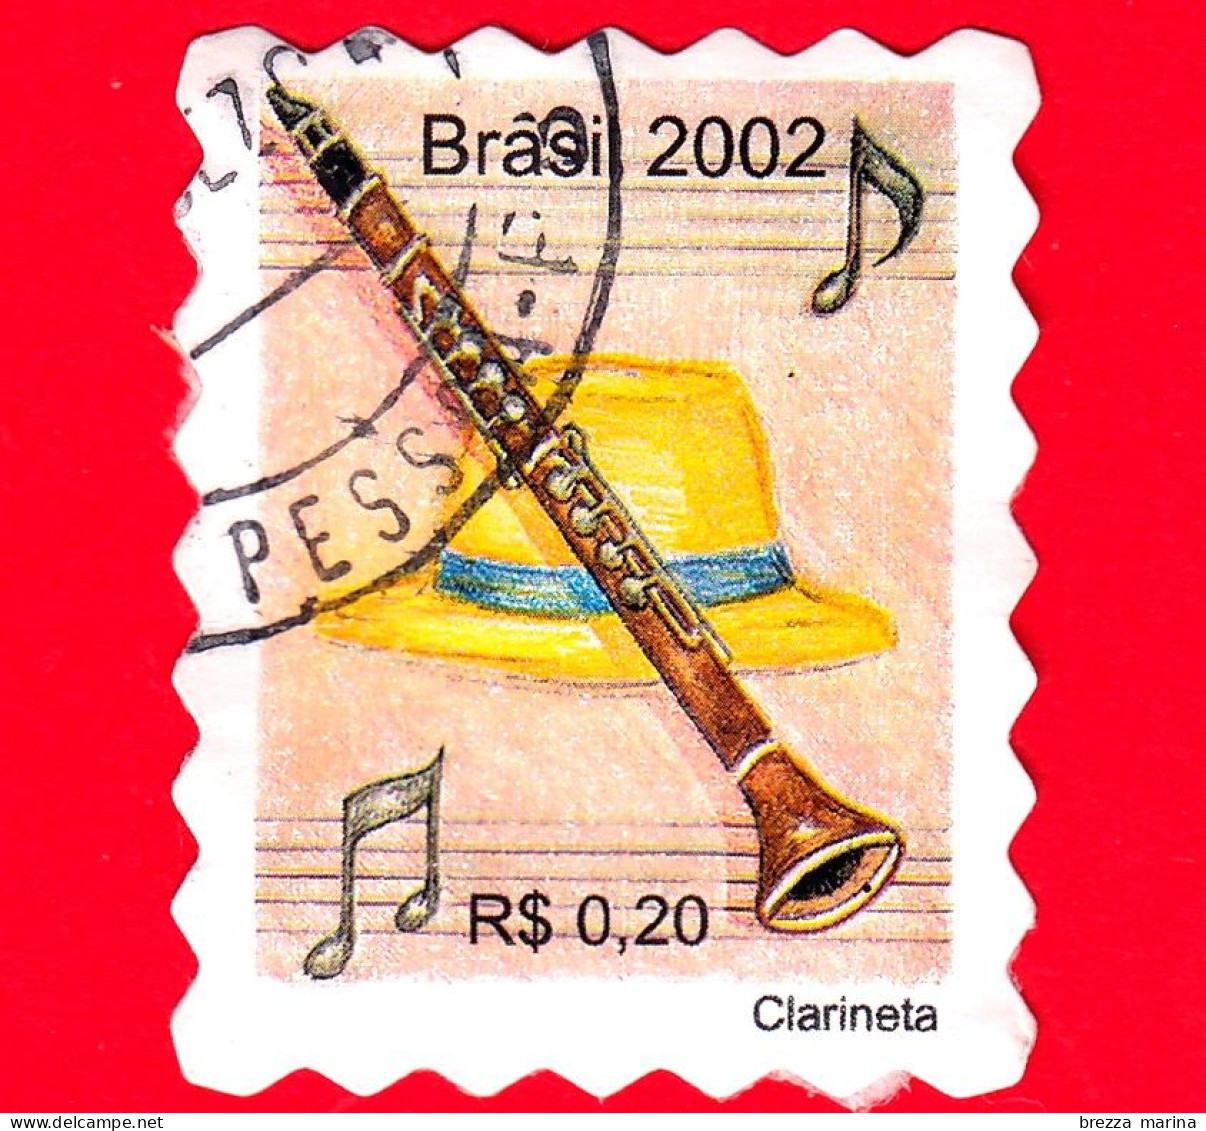 BRASILE - Usato - 2002 - Strumenti Musicali - Clarinetto - Clarineta  - 0.20 - Gebruikt